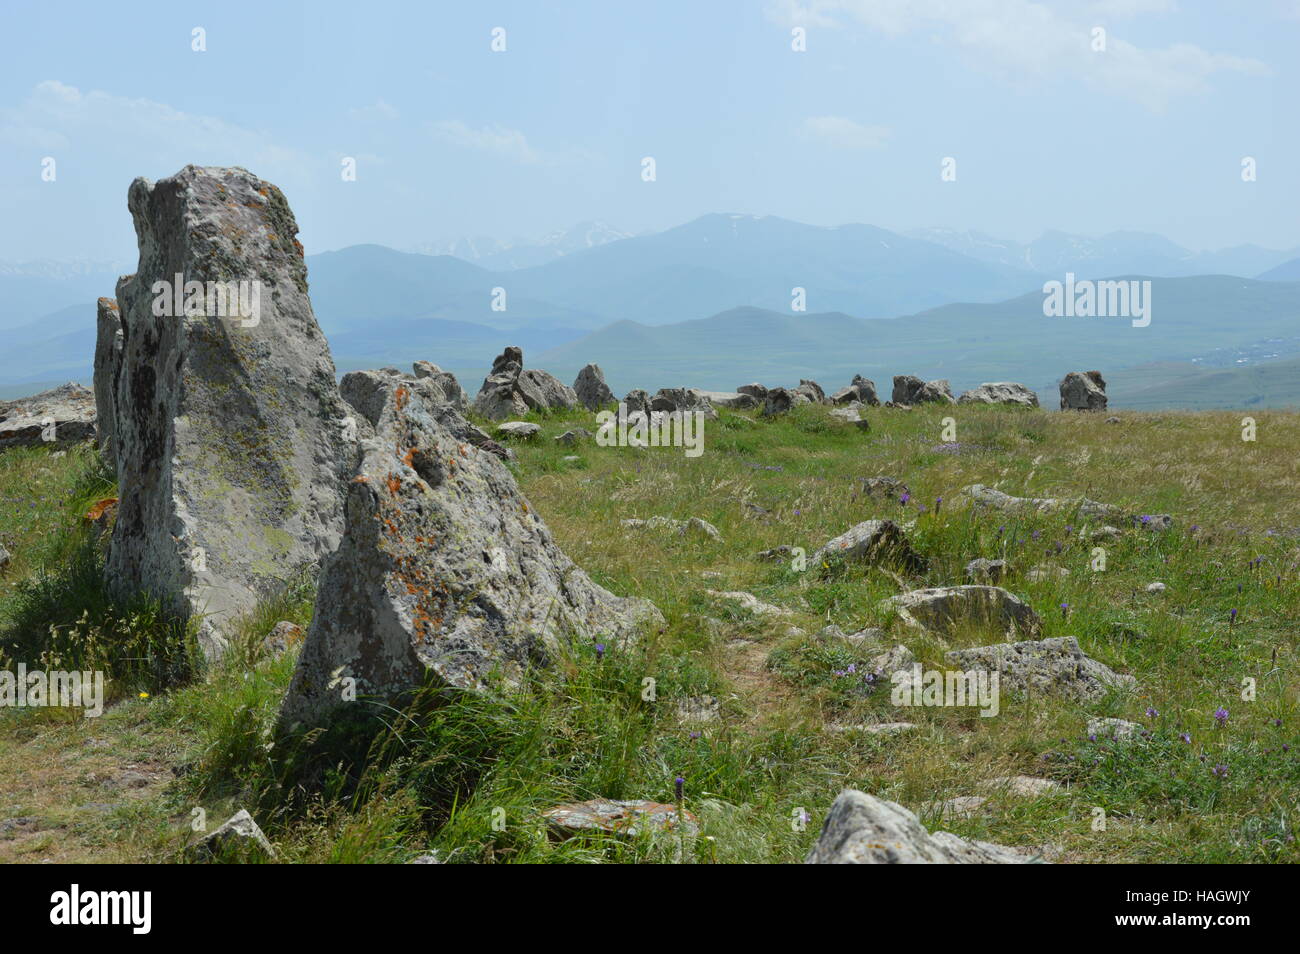 Karahunj o Zorats Karer è un preistorico sito archeologico vicino alla città di Sisan in Armenia. Foto Stock